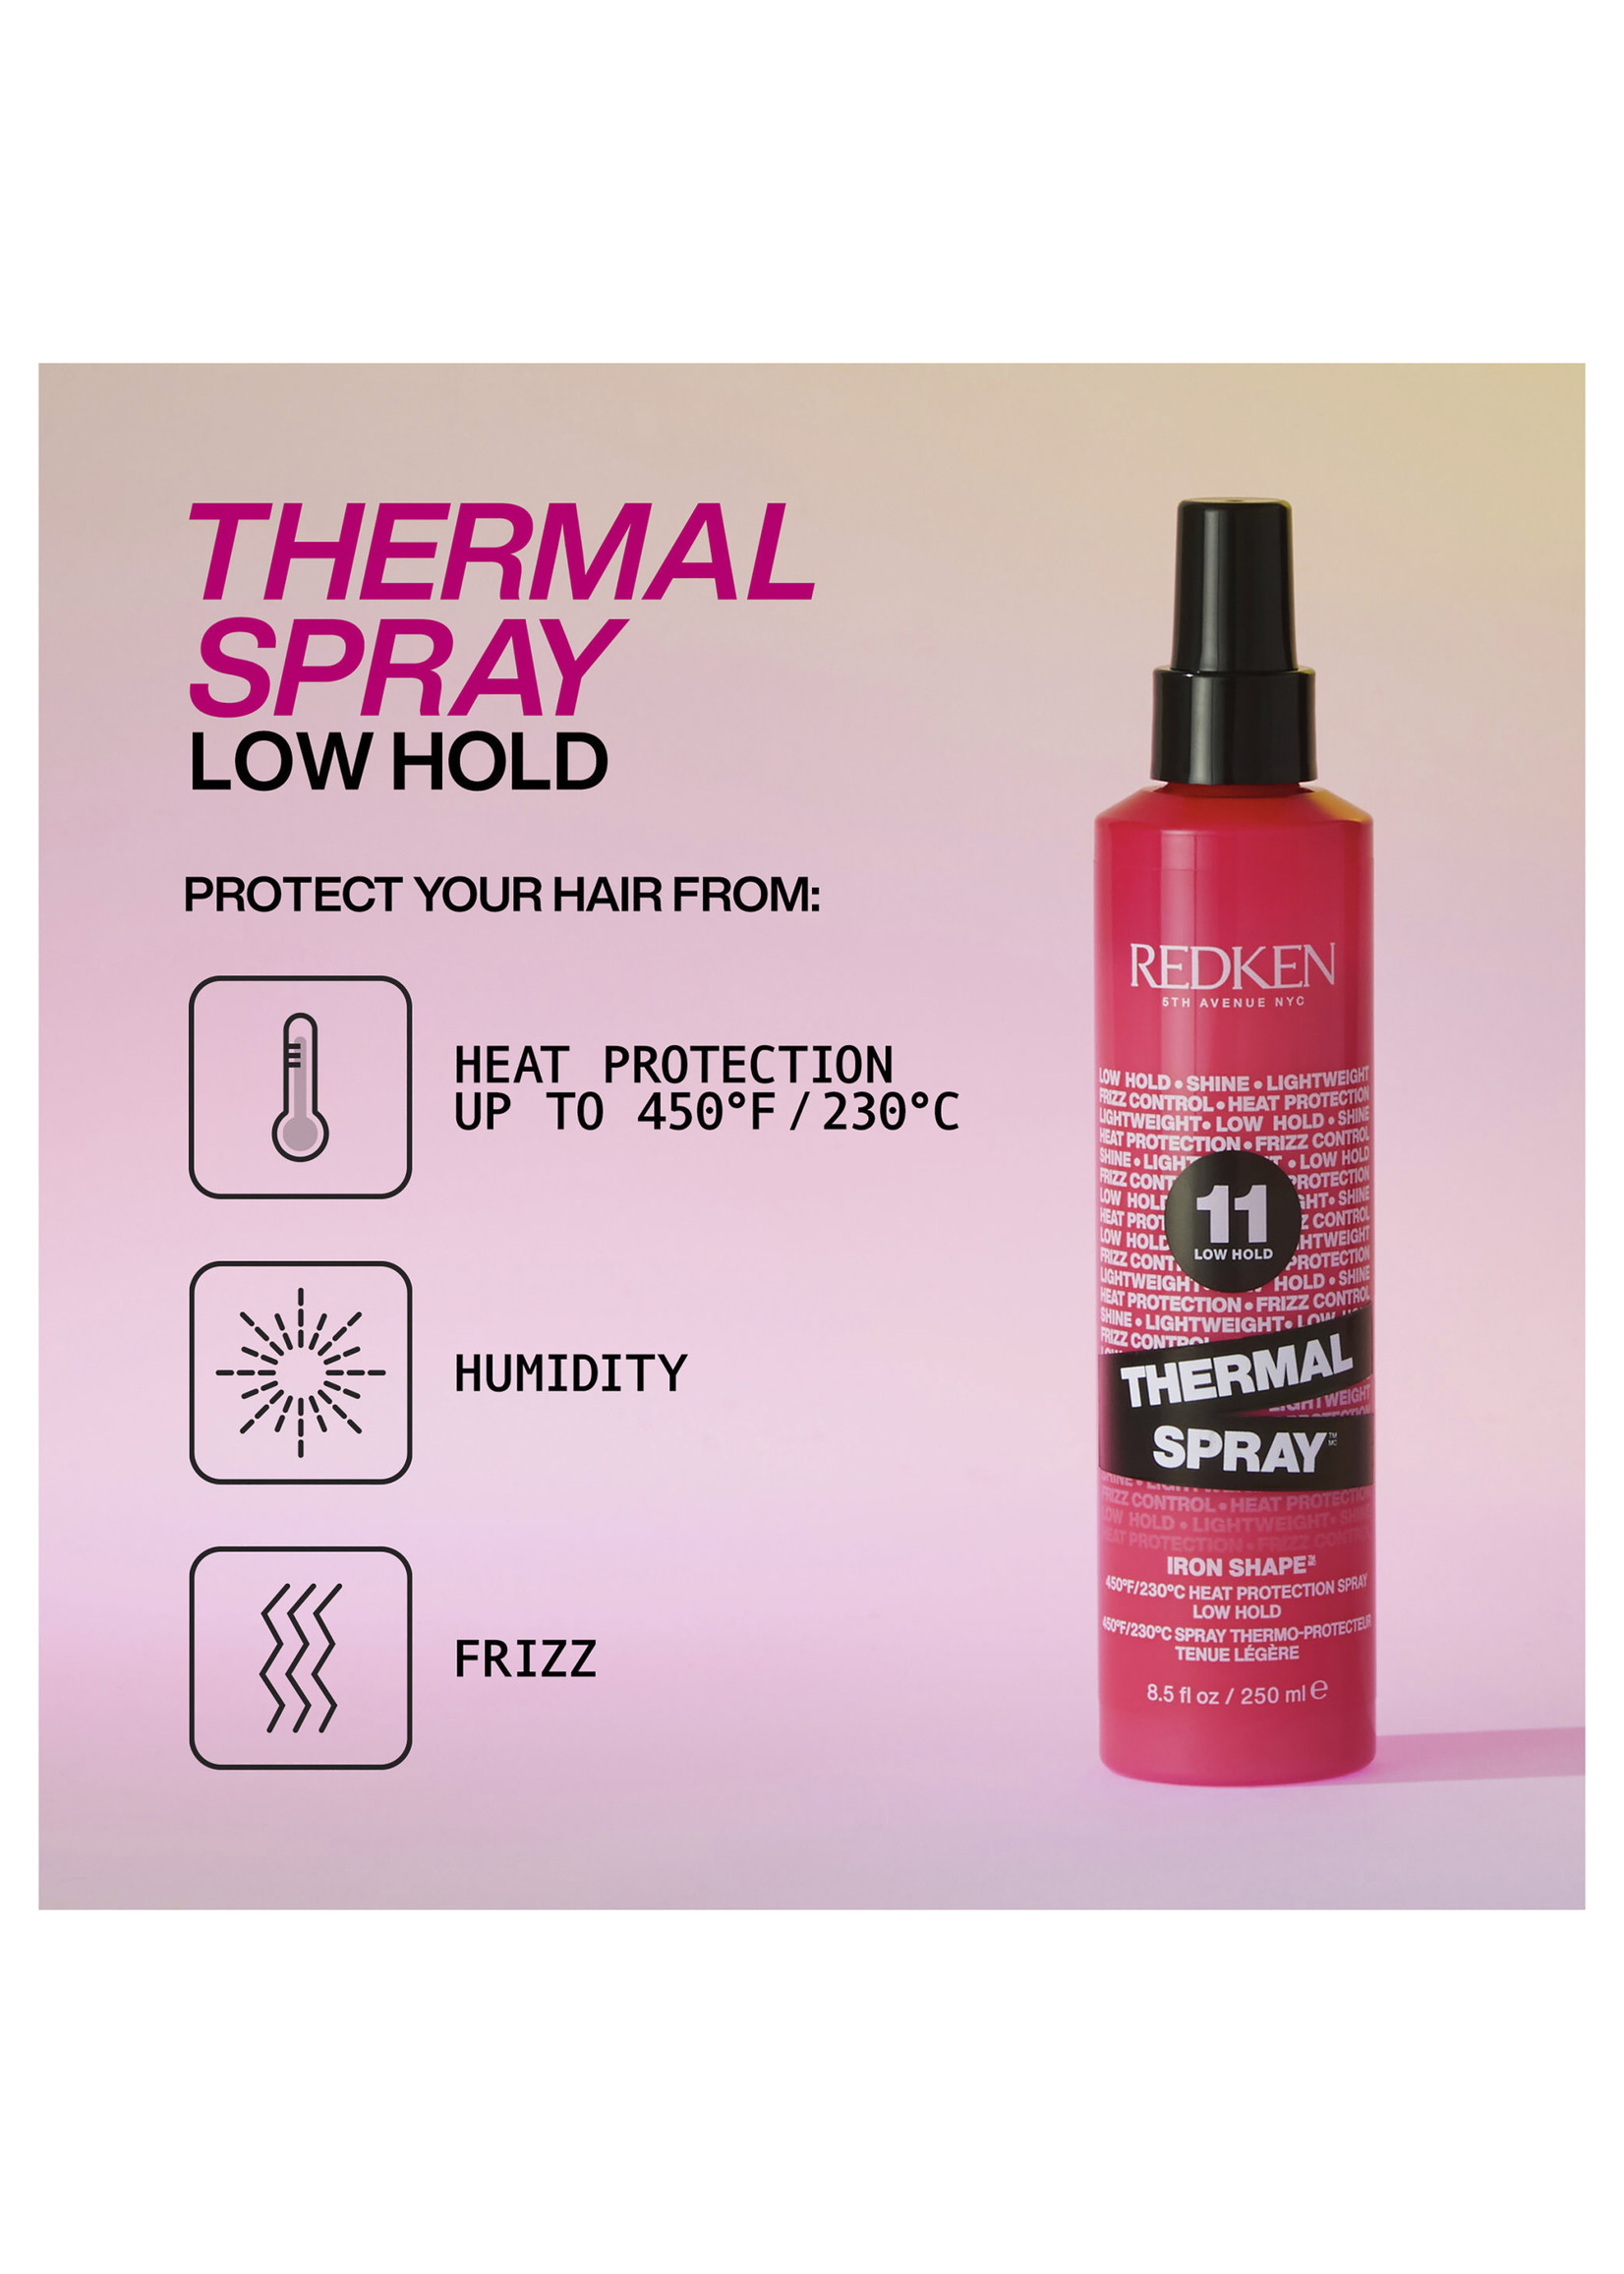 Redken Redken 11 Thermal Spray Iron Shape 250ml